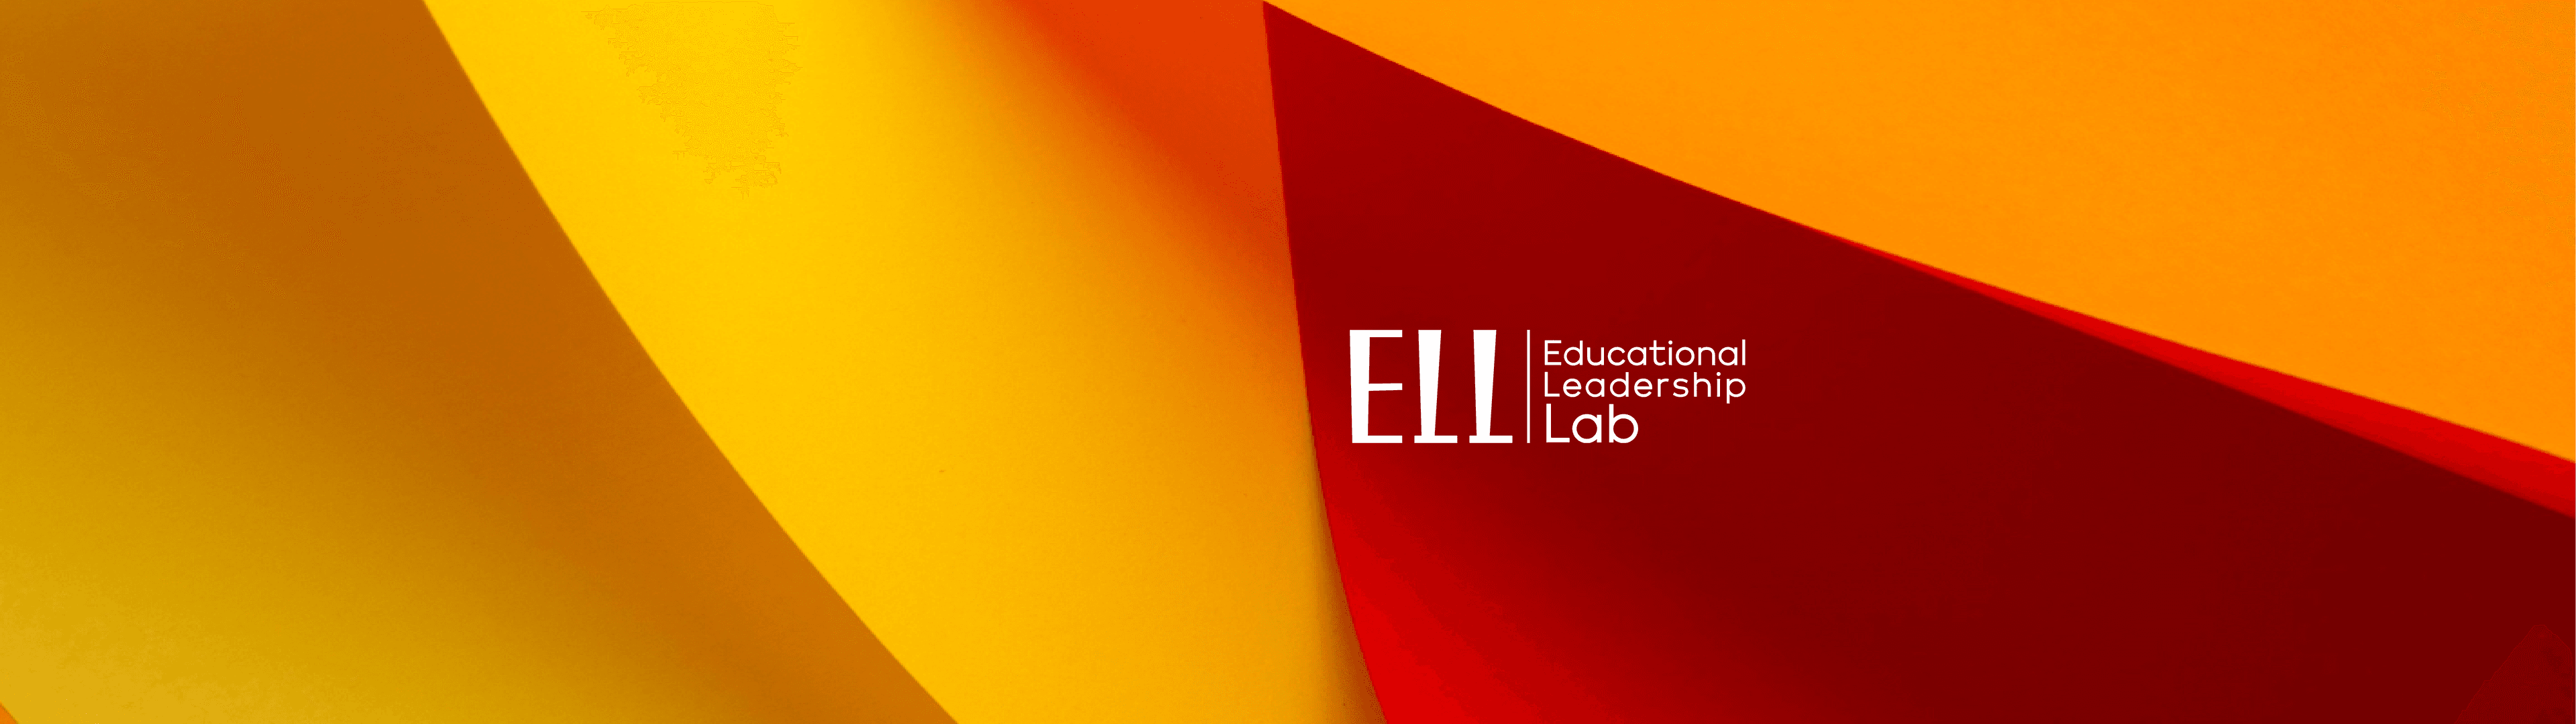 Edu-leadership labs